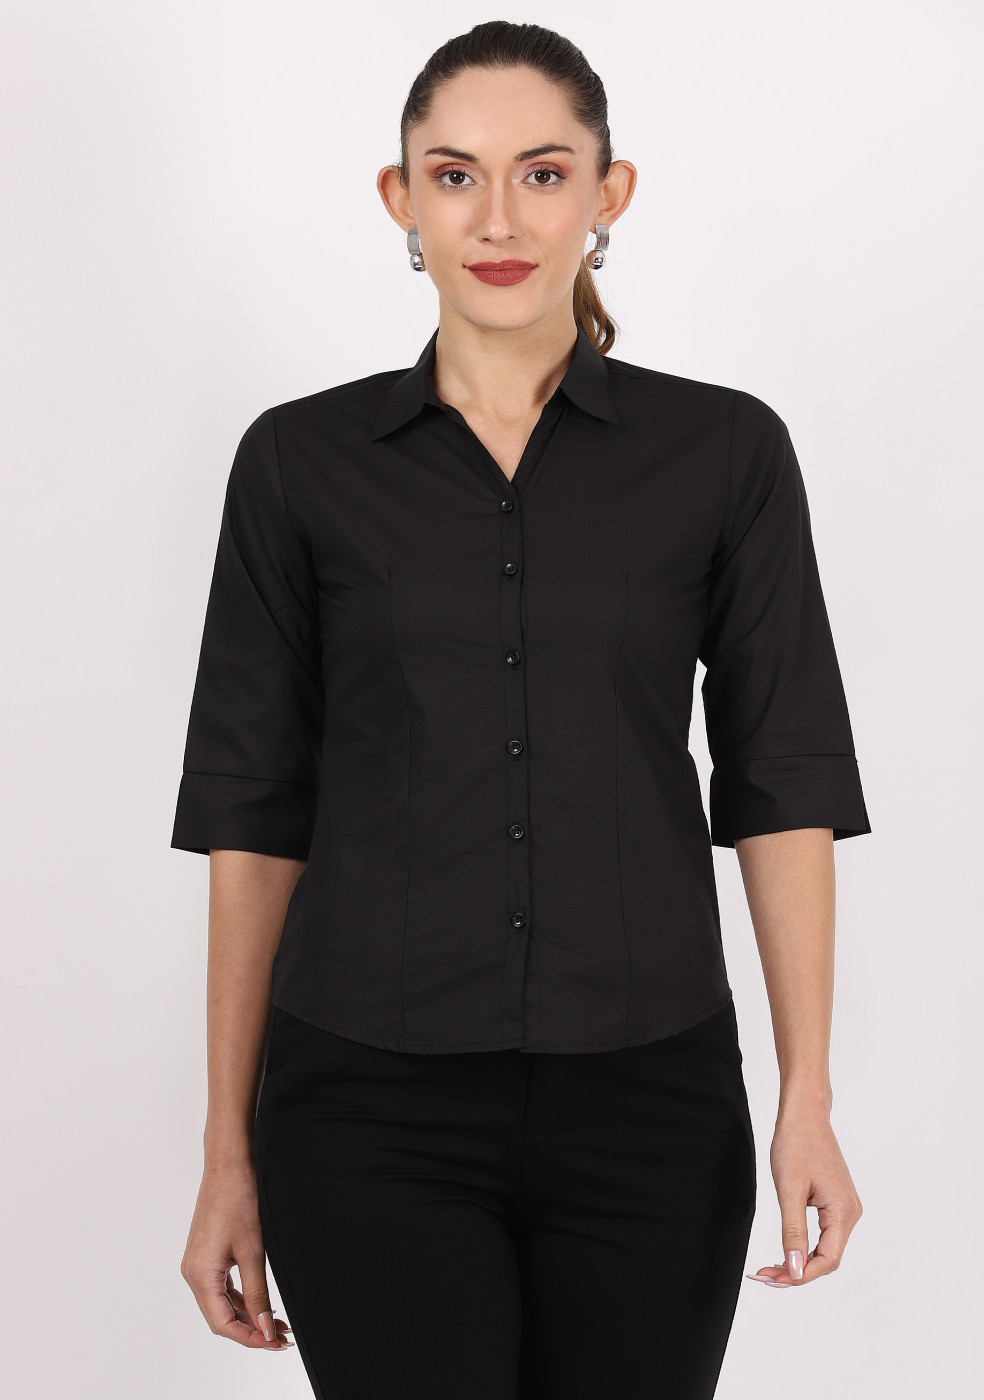 Zx3 Plain Formal Shirt For Women